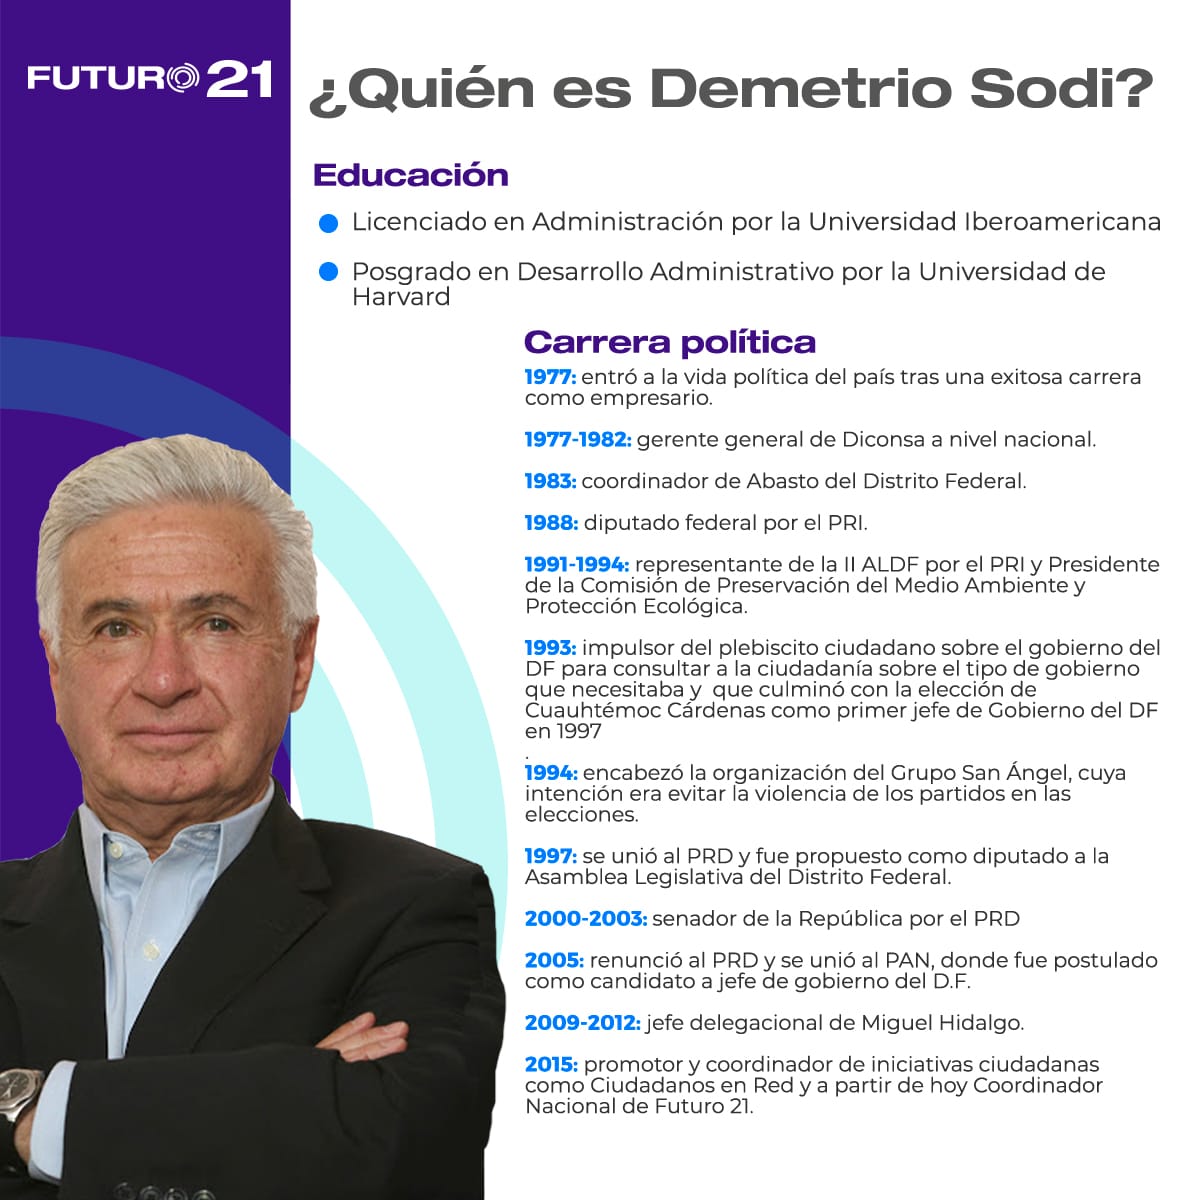 Demetrio Sodi coordinador nacional futuro 21